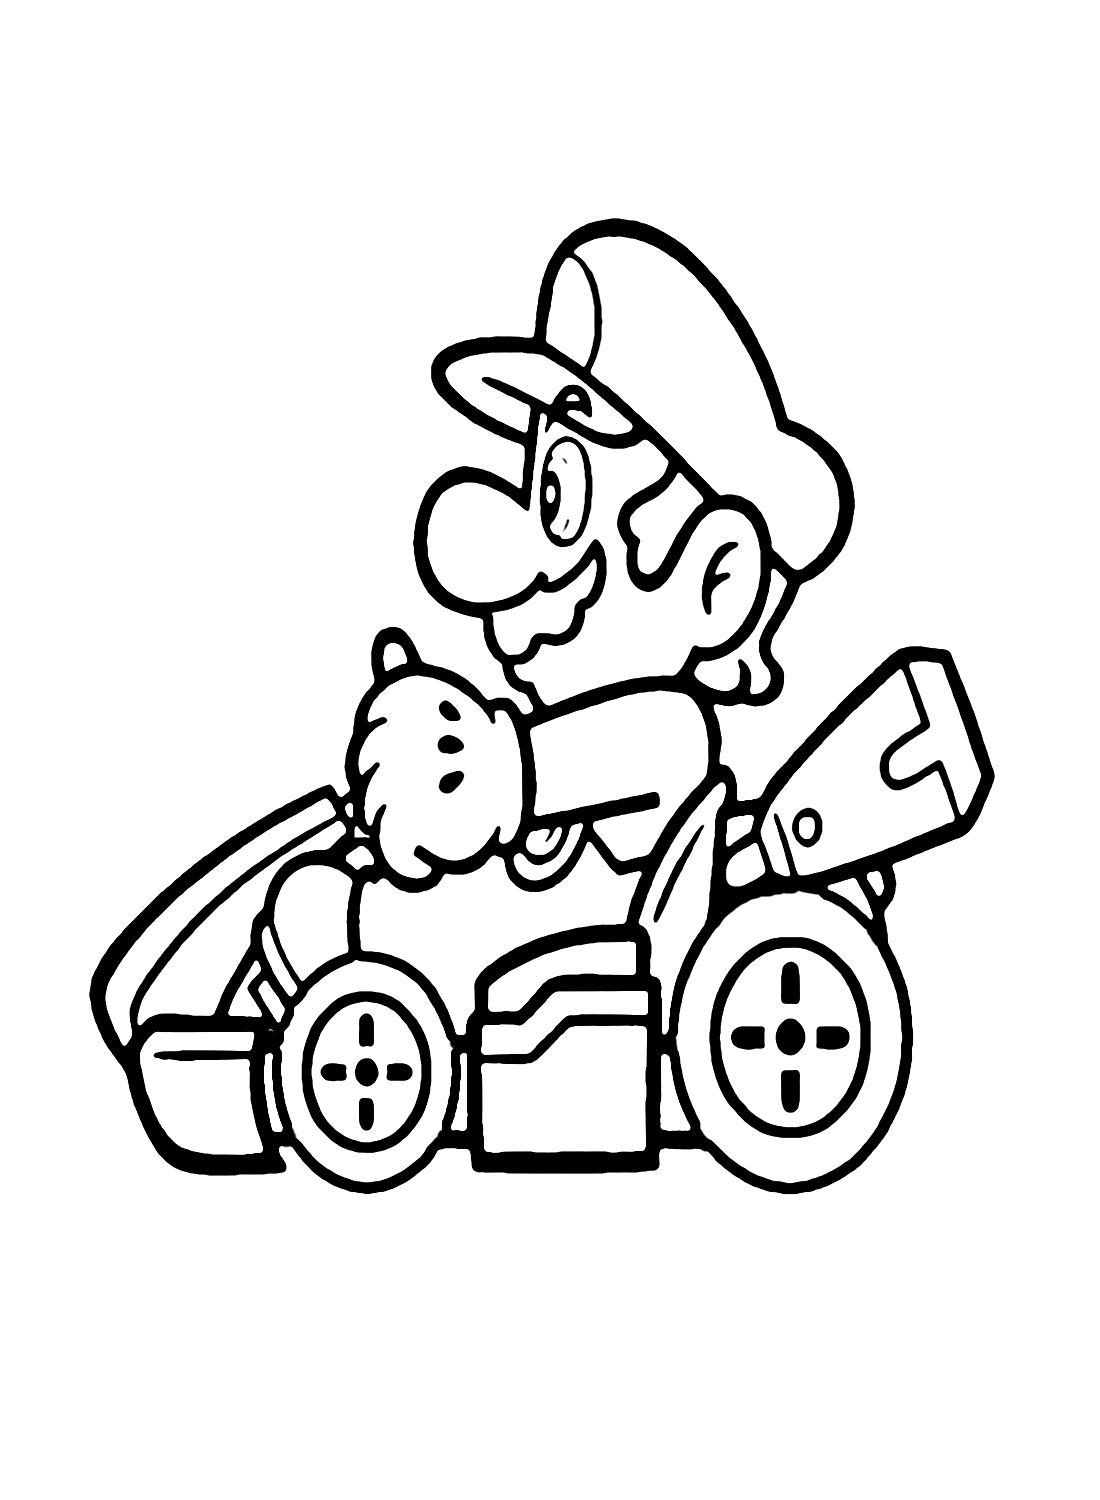 Mario in Mario Kart von Mario Kart